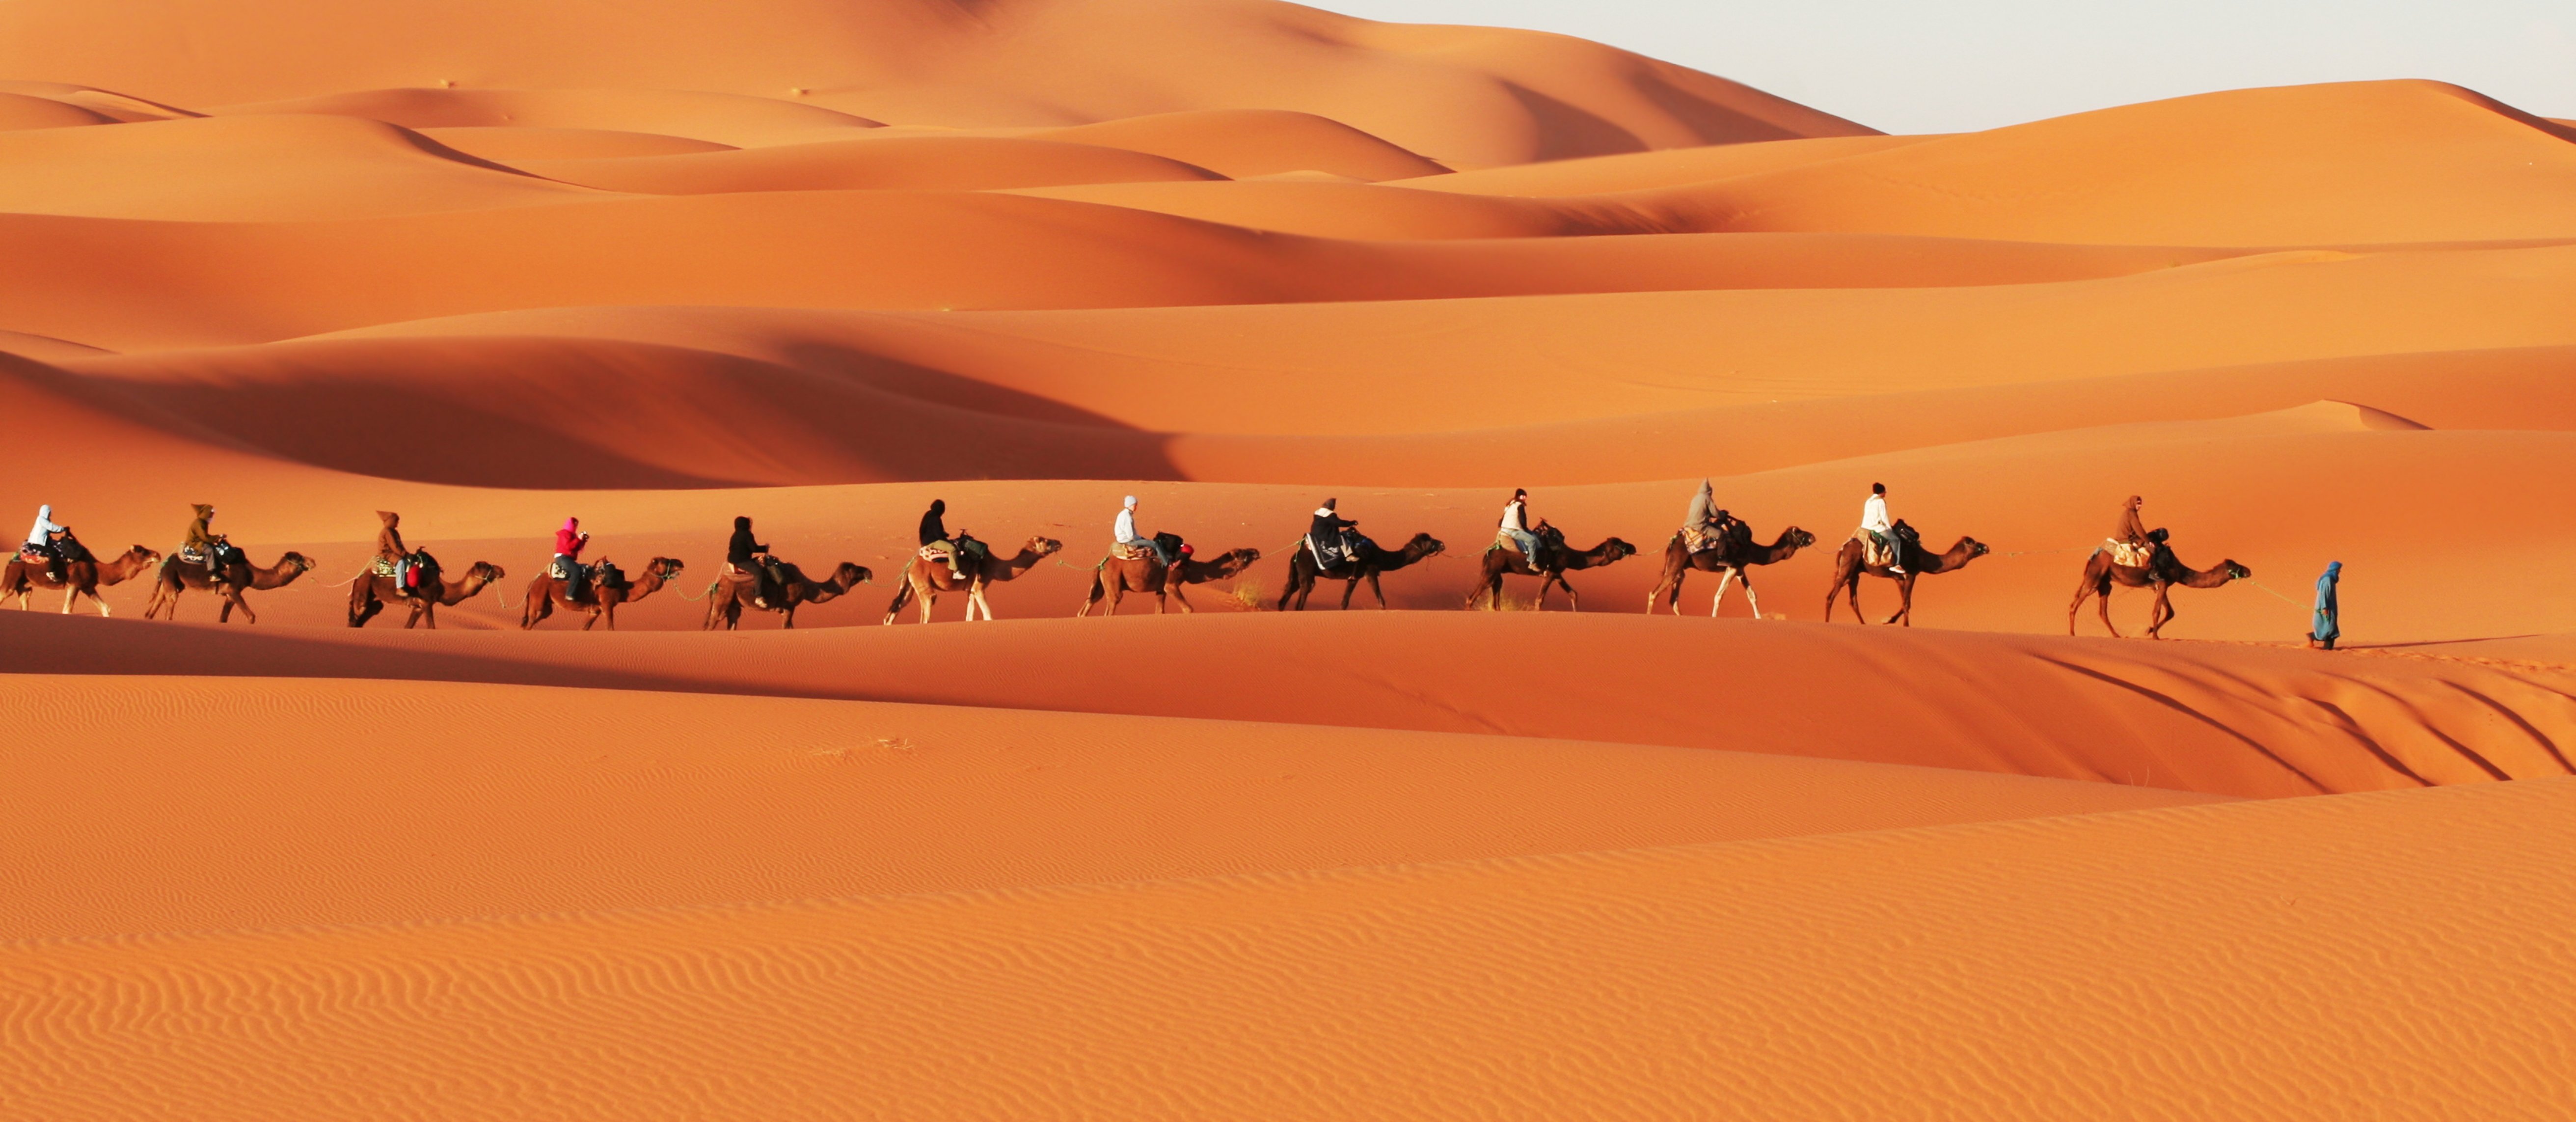 Caravana en el desierto del Sahara